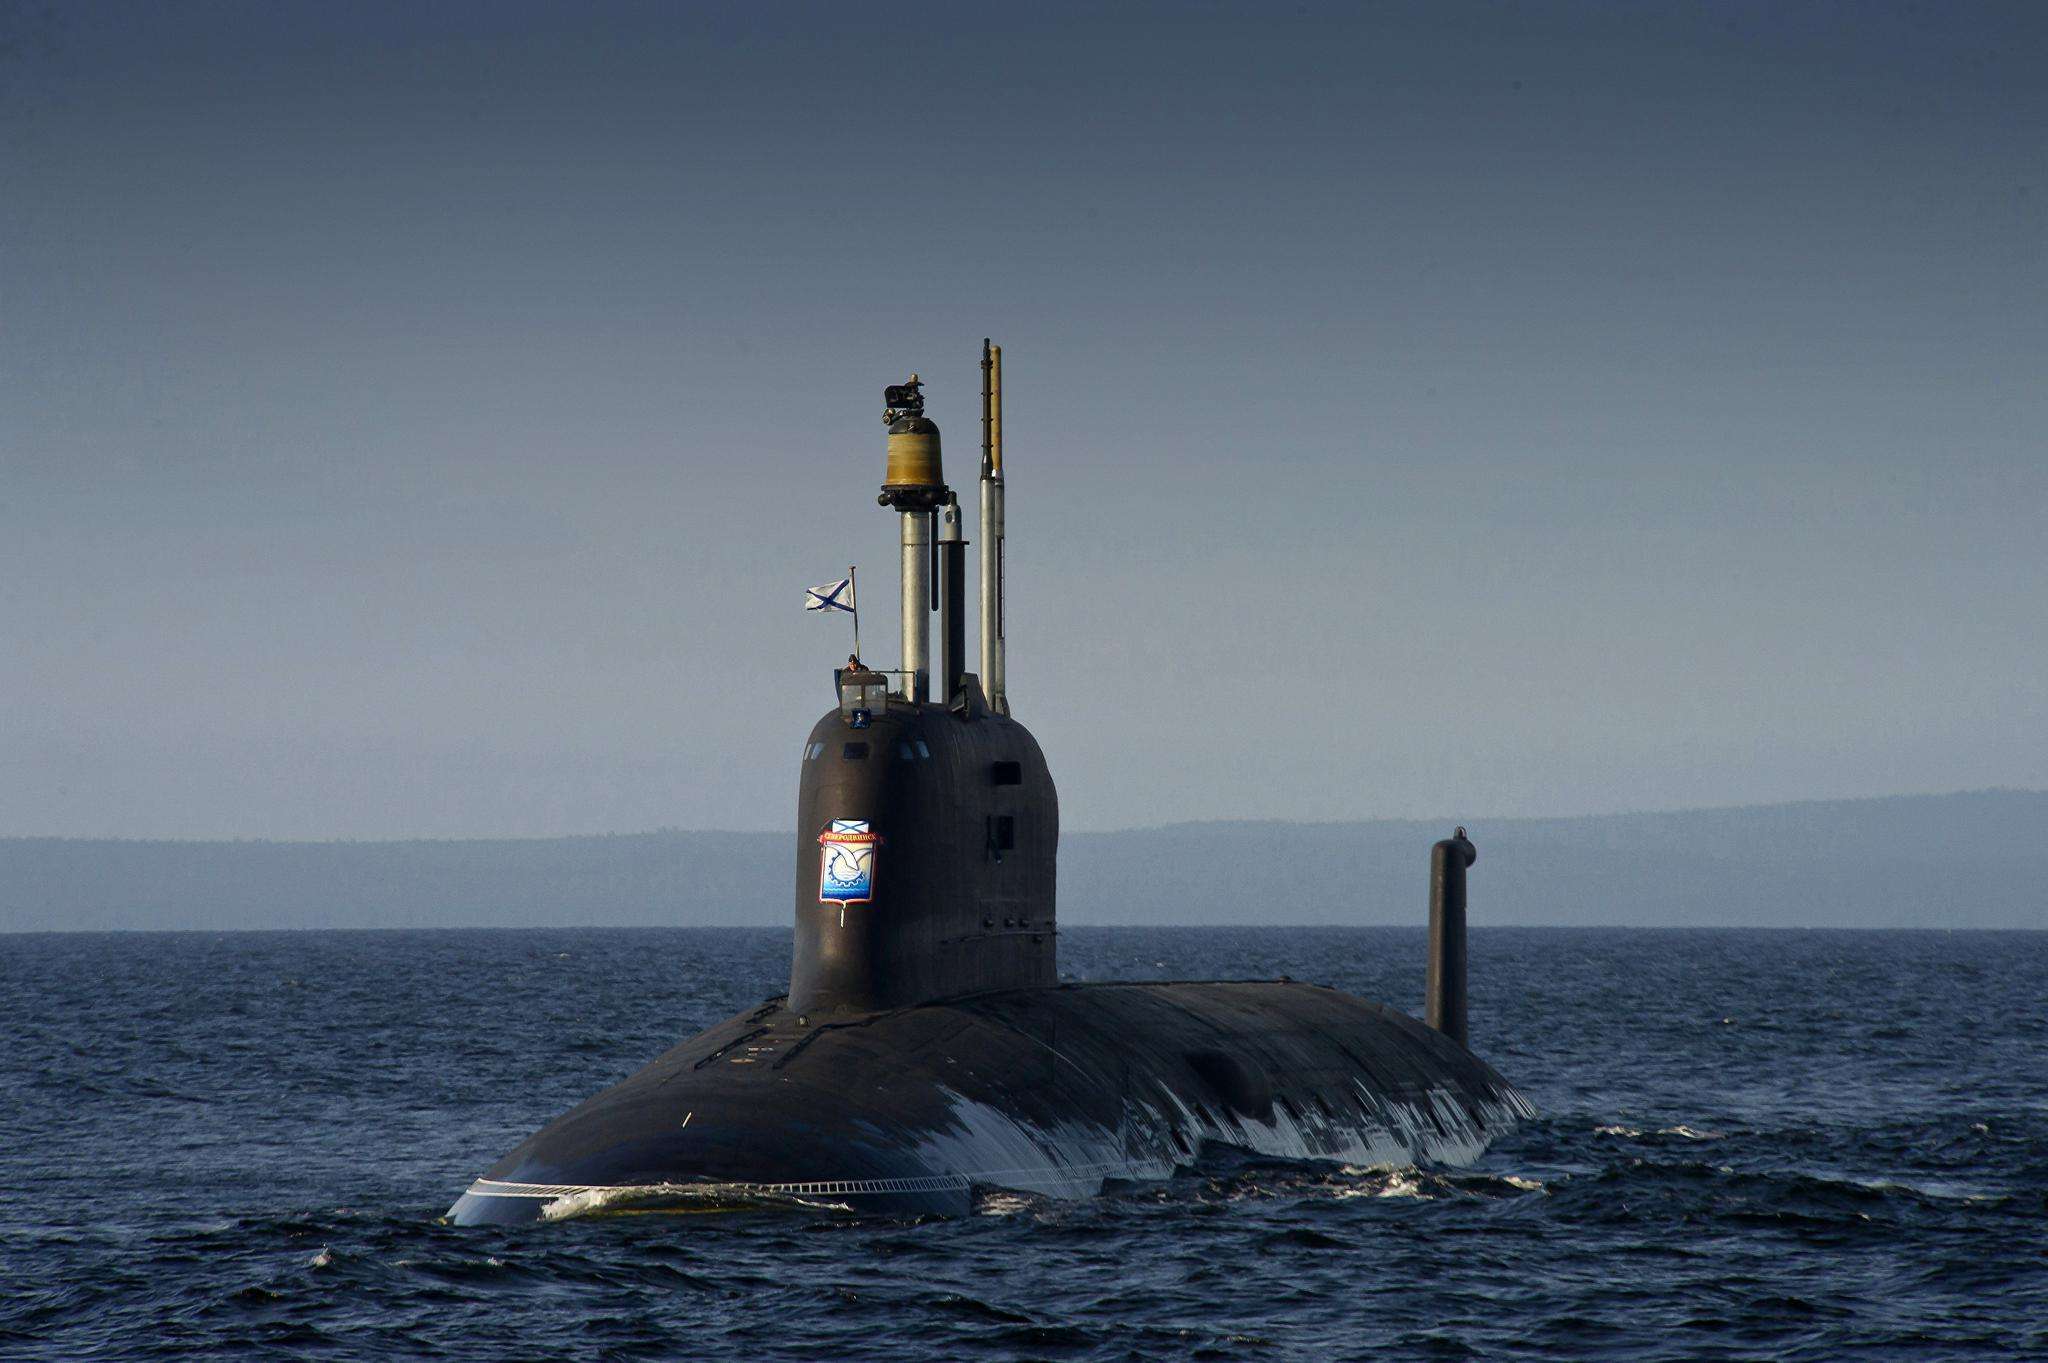 原创俄罗斯潜艇亚森级攻击核潜艇